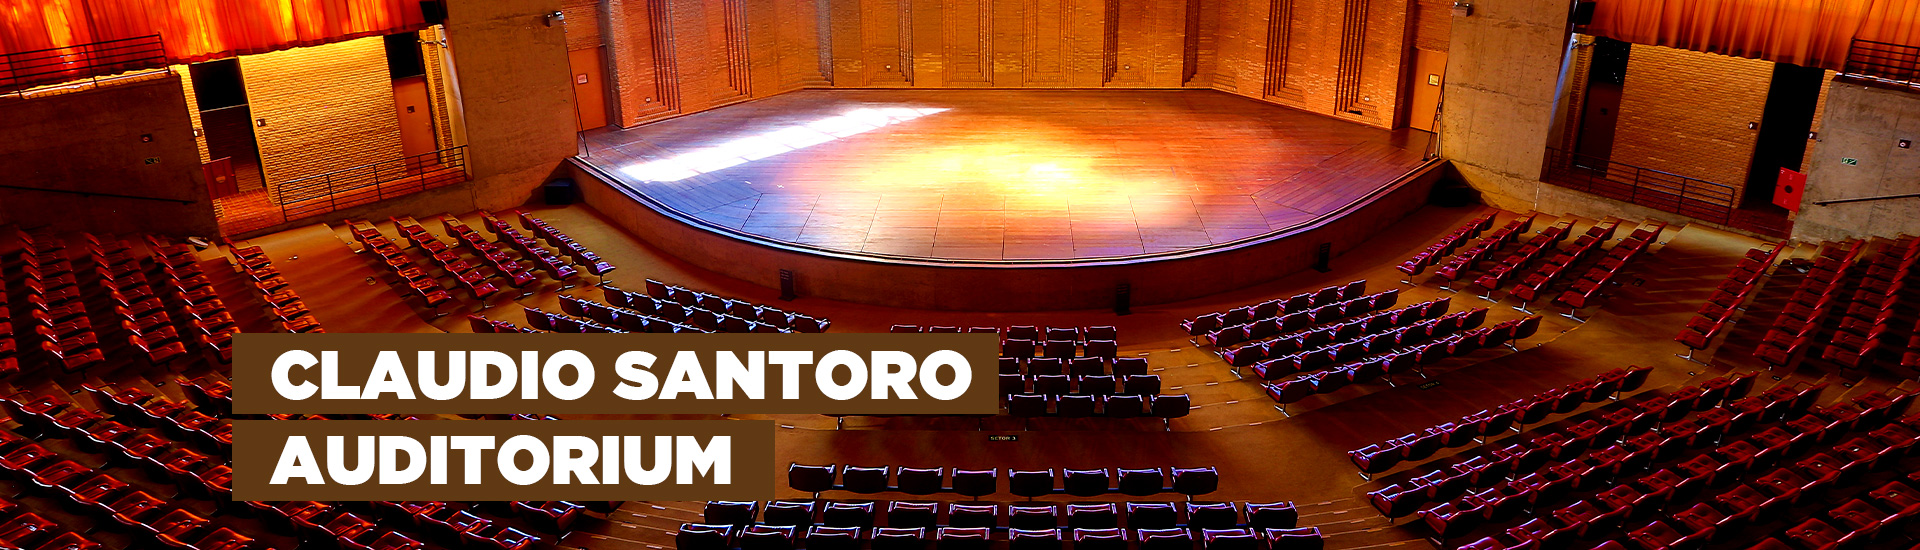 A imagem mostra o Auditório Claudio Santoro que possui uma arquitetura que se assemelha a arena. Há 814 poltronas na cor vermelha, um palco com luzes e vidraças nas quais é possível observar a natureza. Na imagem está escrito "Claudio Santoro Auditorium"